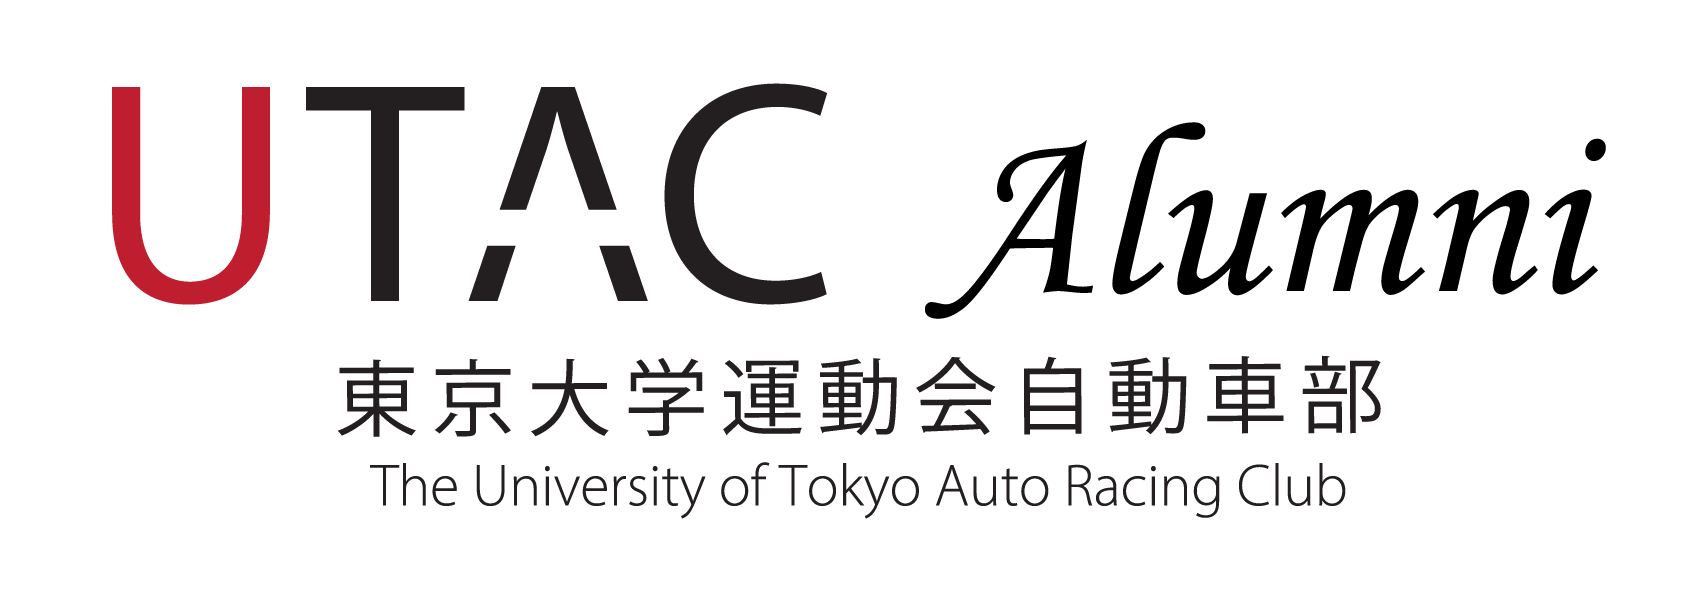 東京大学運動会自動車部OBの皆様(UTAC Alumni)